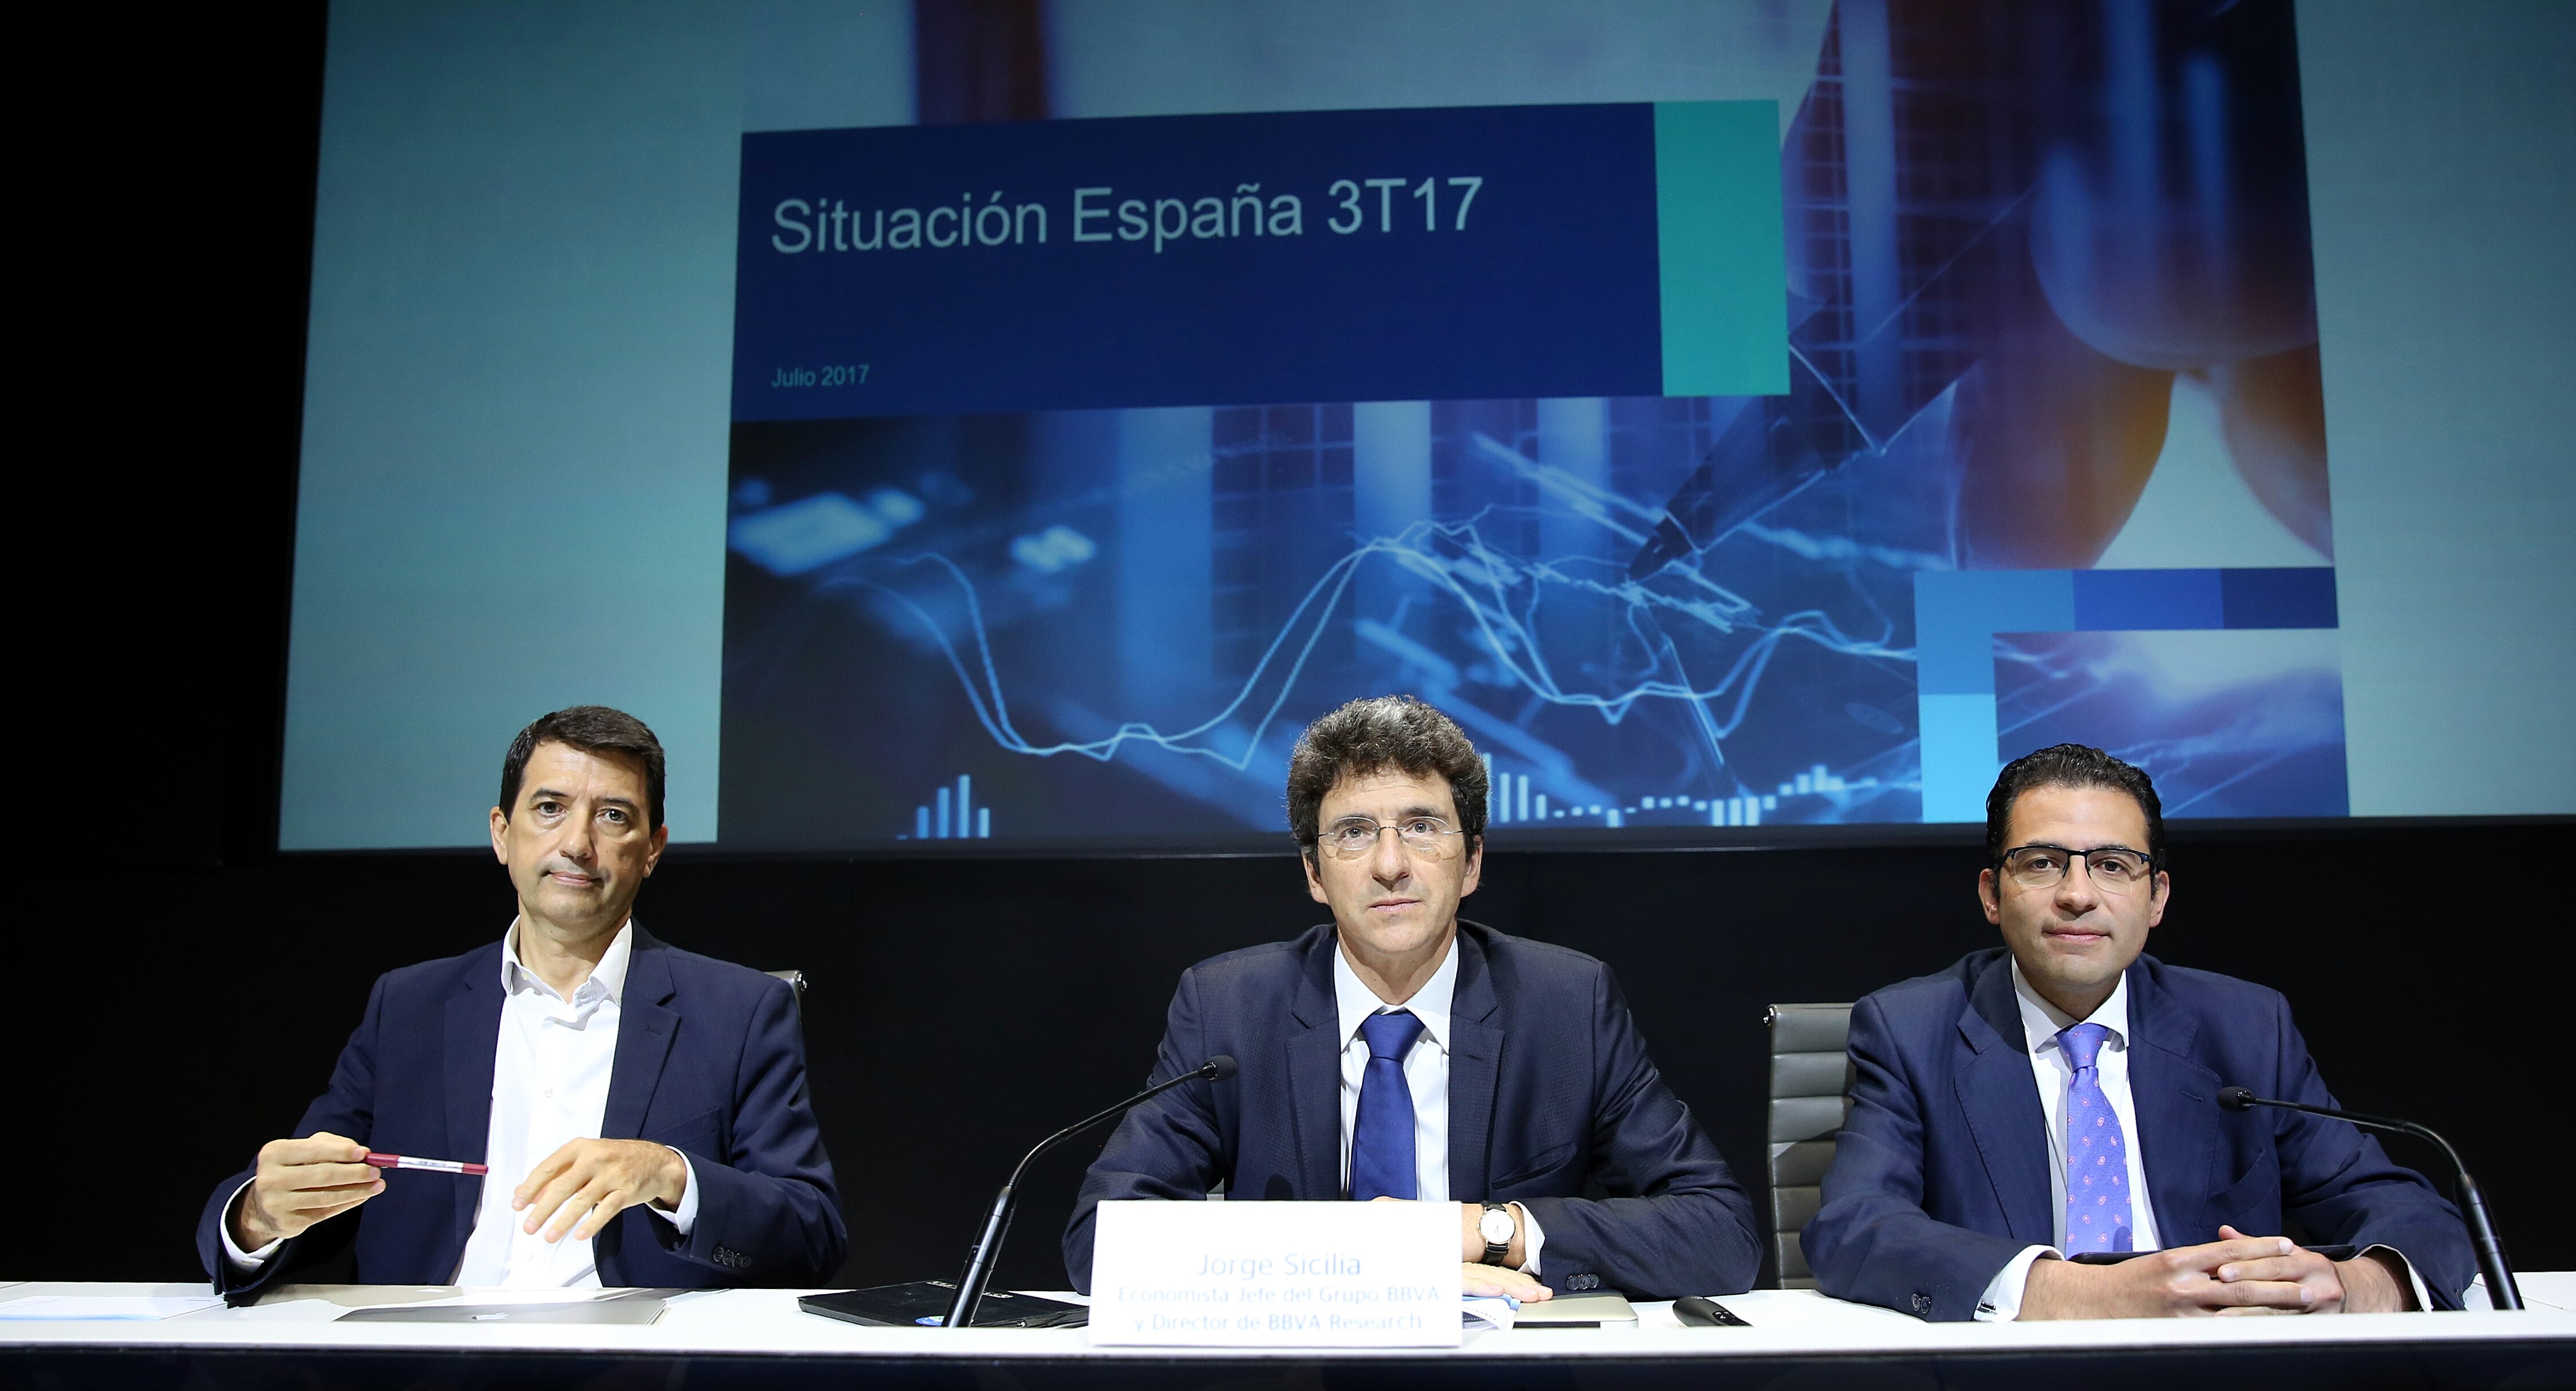 Jorge Sicilia, Rafael Doménech y Miguel Cardoso en la presentación de Situación España 3T17